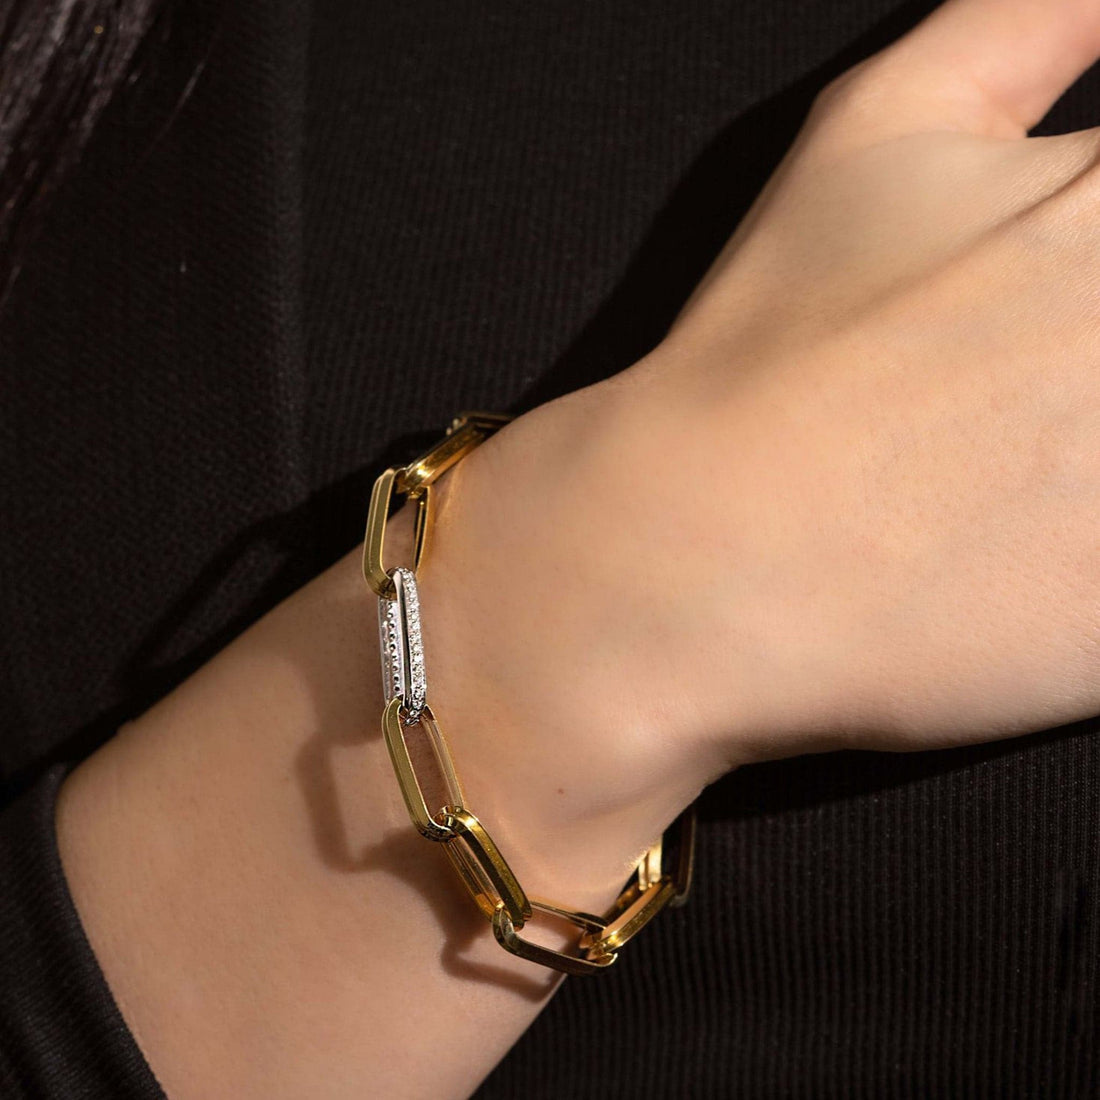 Roberto Coin 18k Men's Link Bracelet with DiamondsRoberto Coin 18k Men's Gold Bracelet Links with Diamonds Modeled